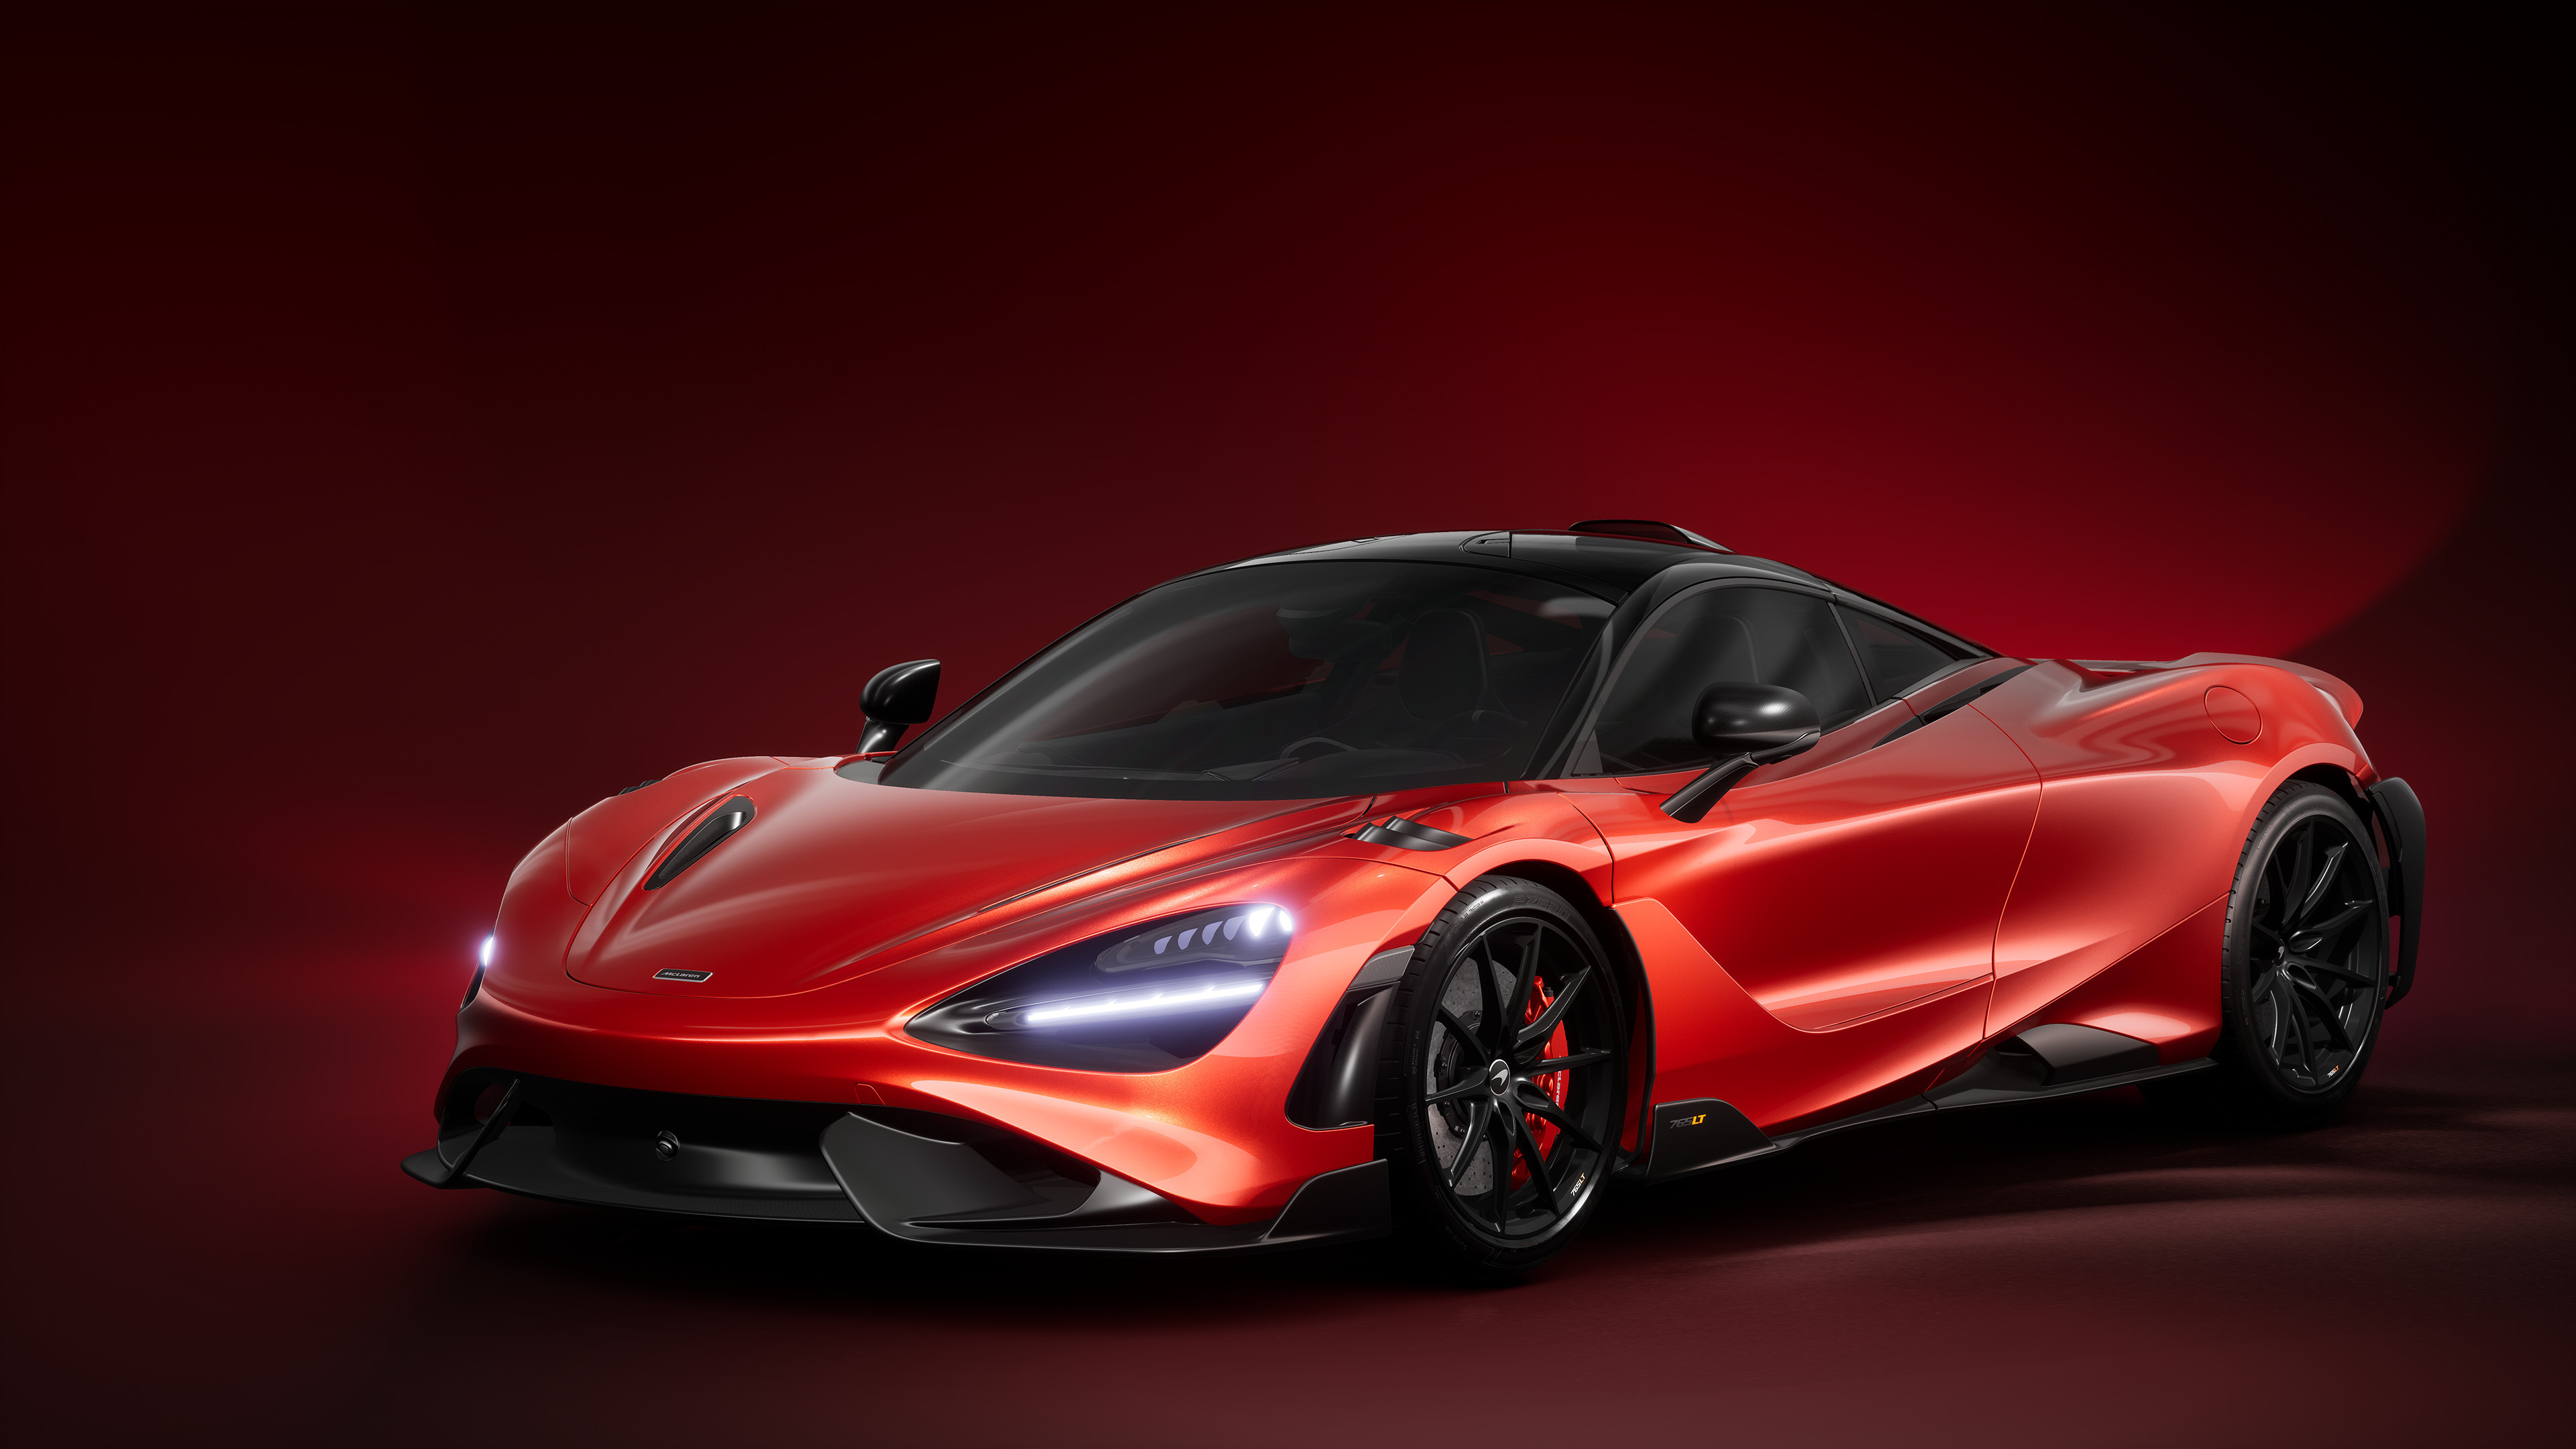 McLaren 765LT, Jacob lester, McLaren passion, Dynamic driving experience, 3840x2160 4K Desktop